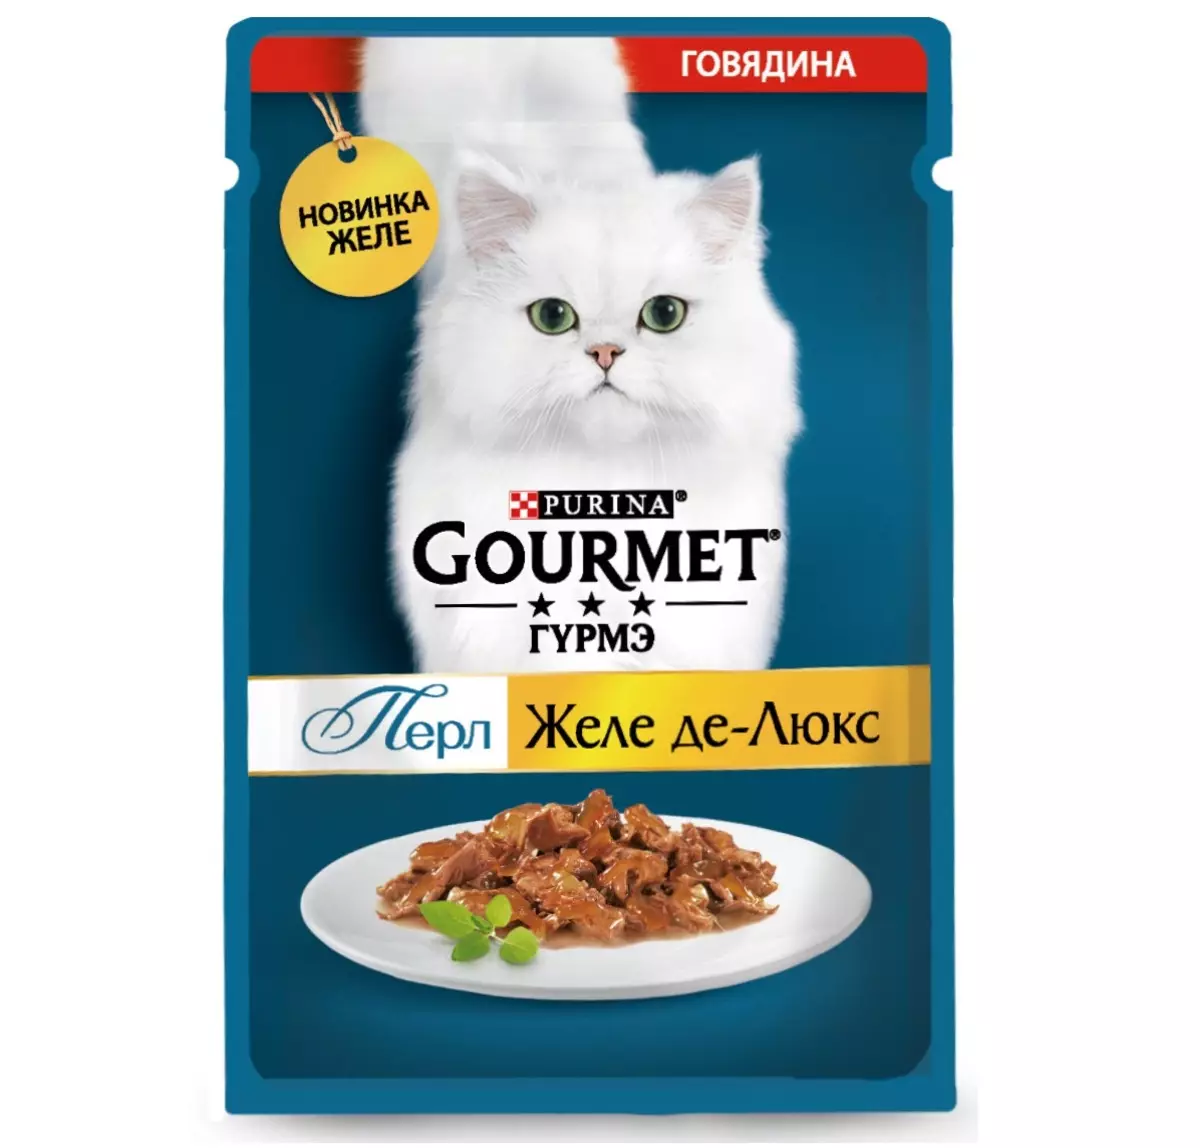 Gourmet: gat de gat i gatets de purina, patis humits i altres aliments enllaunats felins, la seva composició, comentaris 22711_31